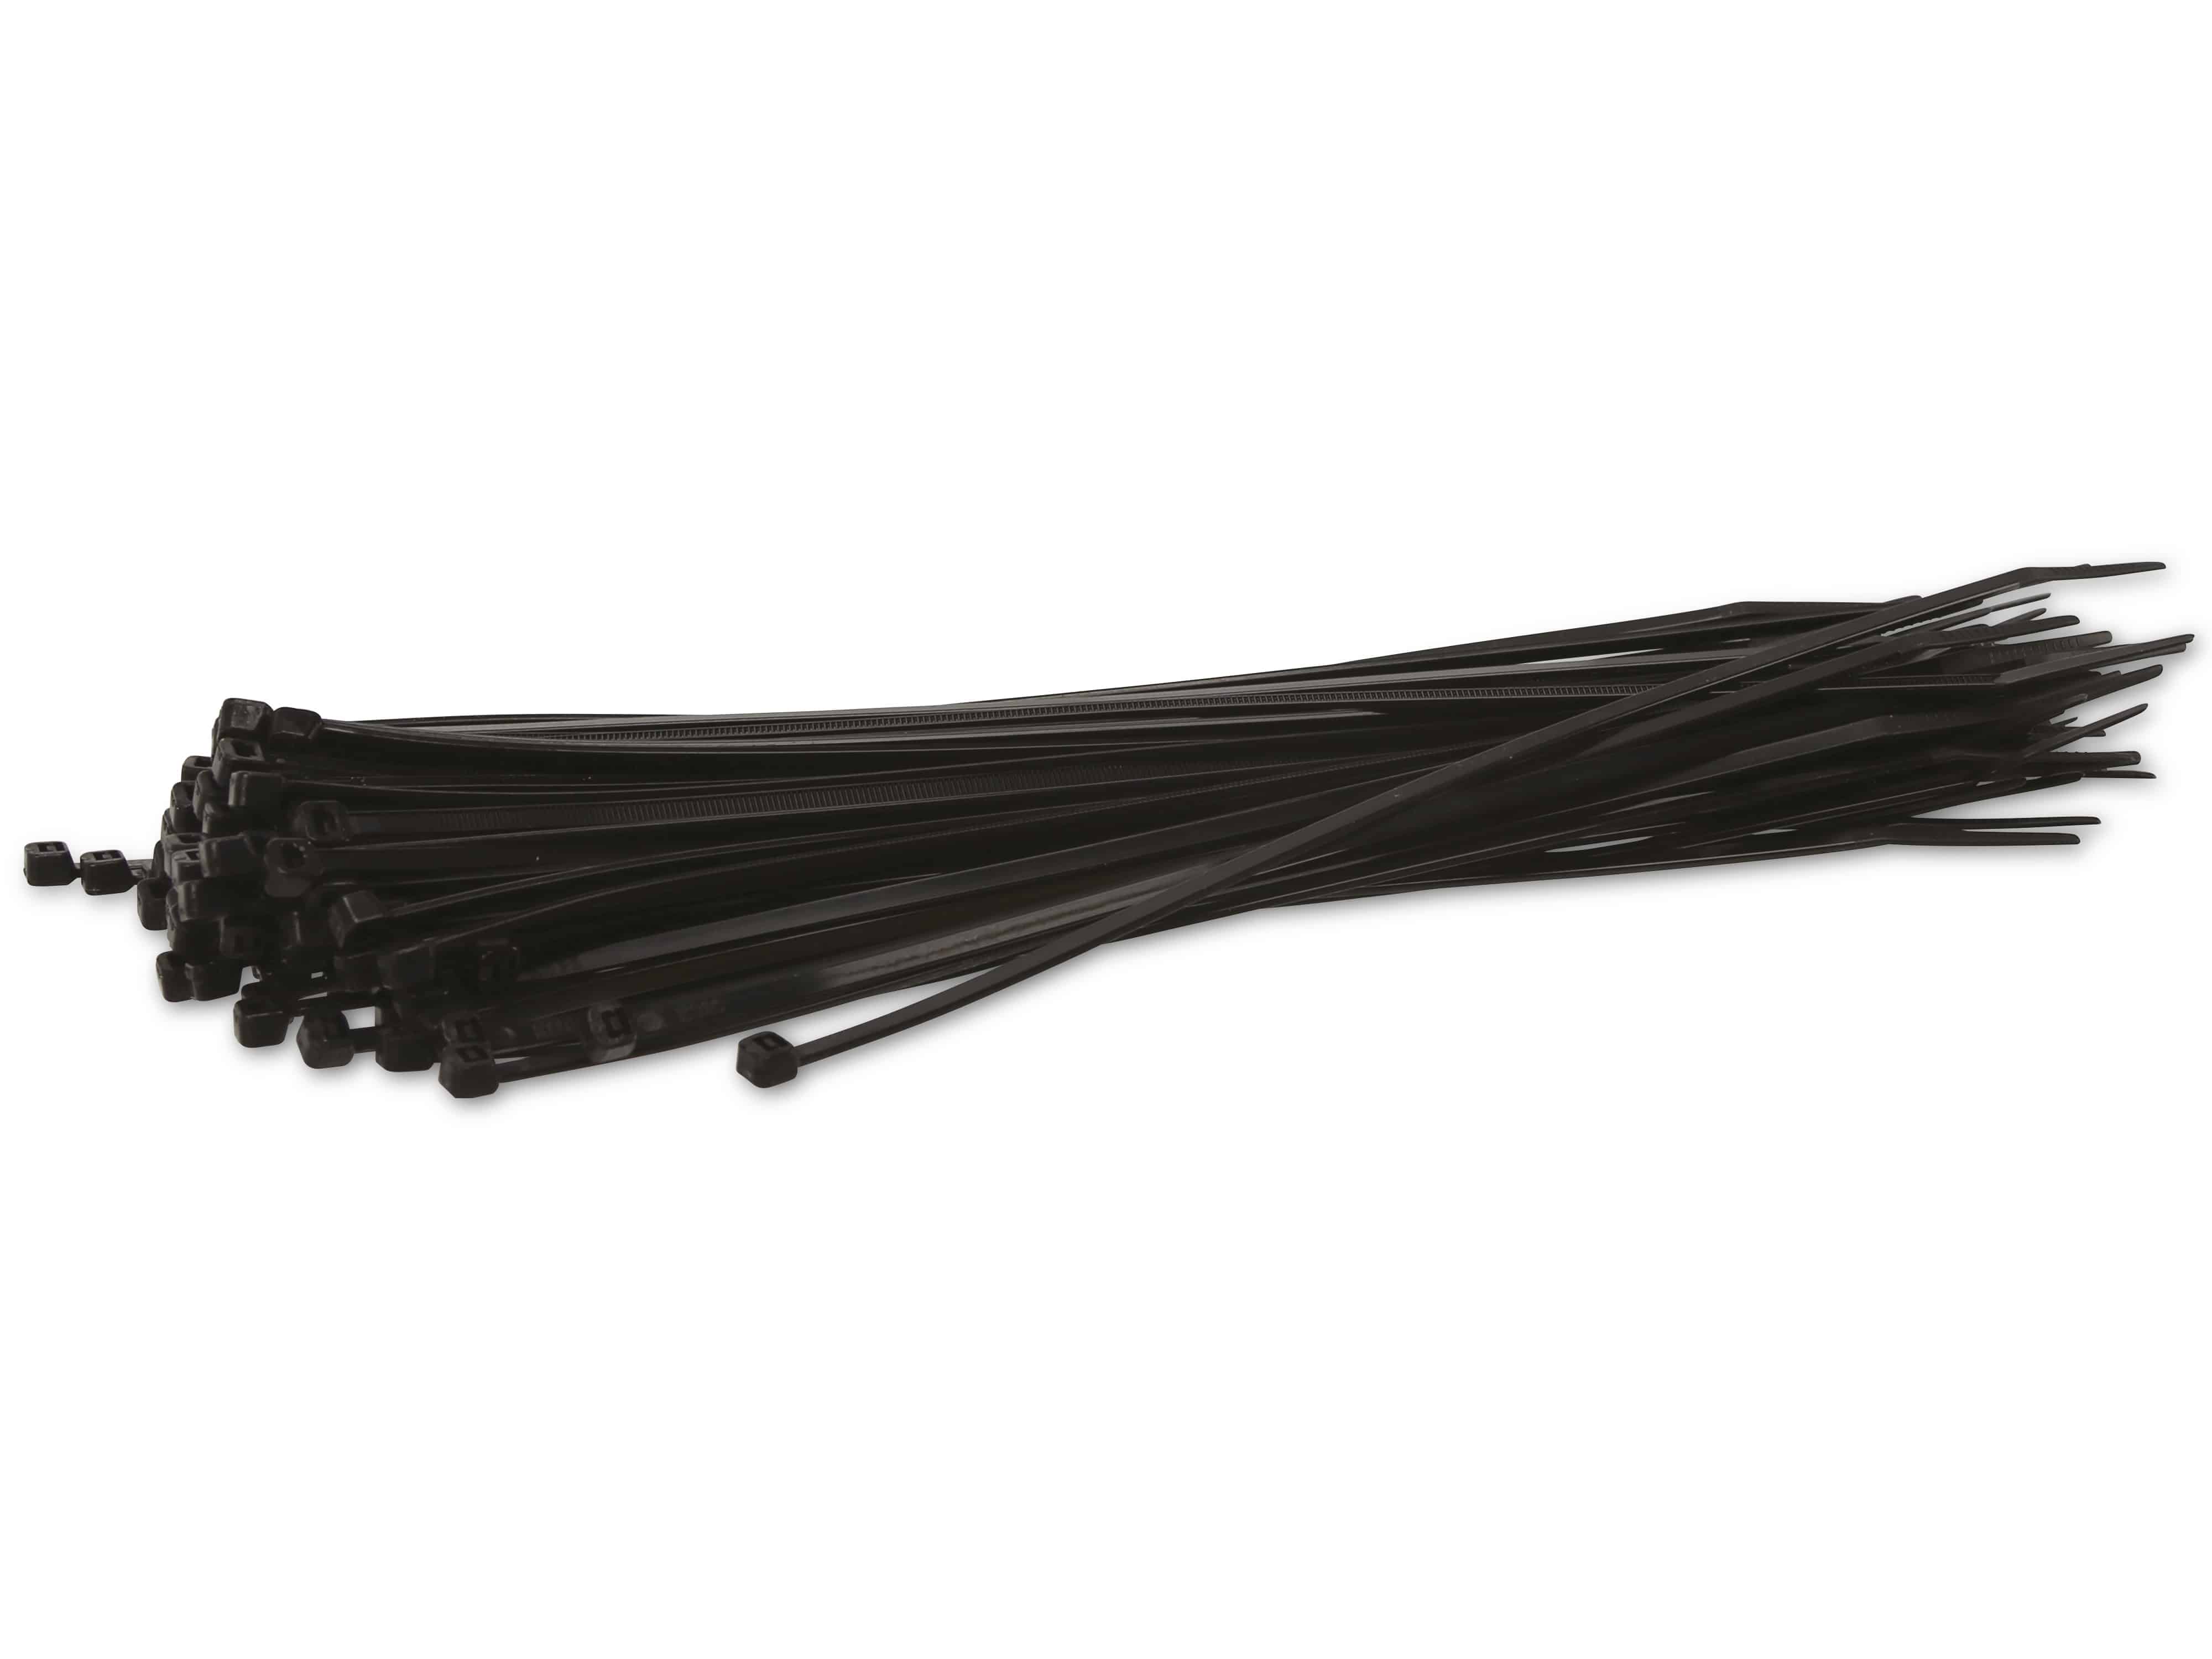 KSS Kabelbinder-Sortiment Polyamid 6.6, schwarz, 250x3,6, UV-beständig, 100 Stück